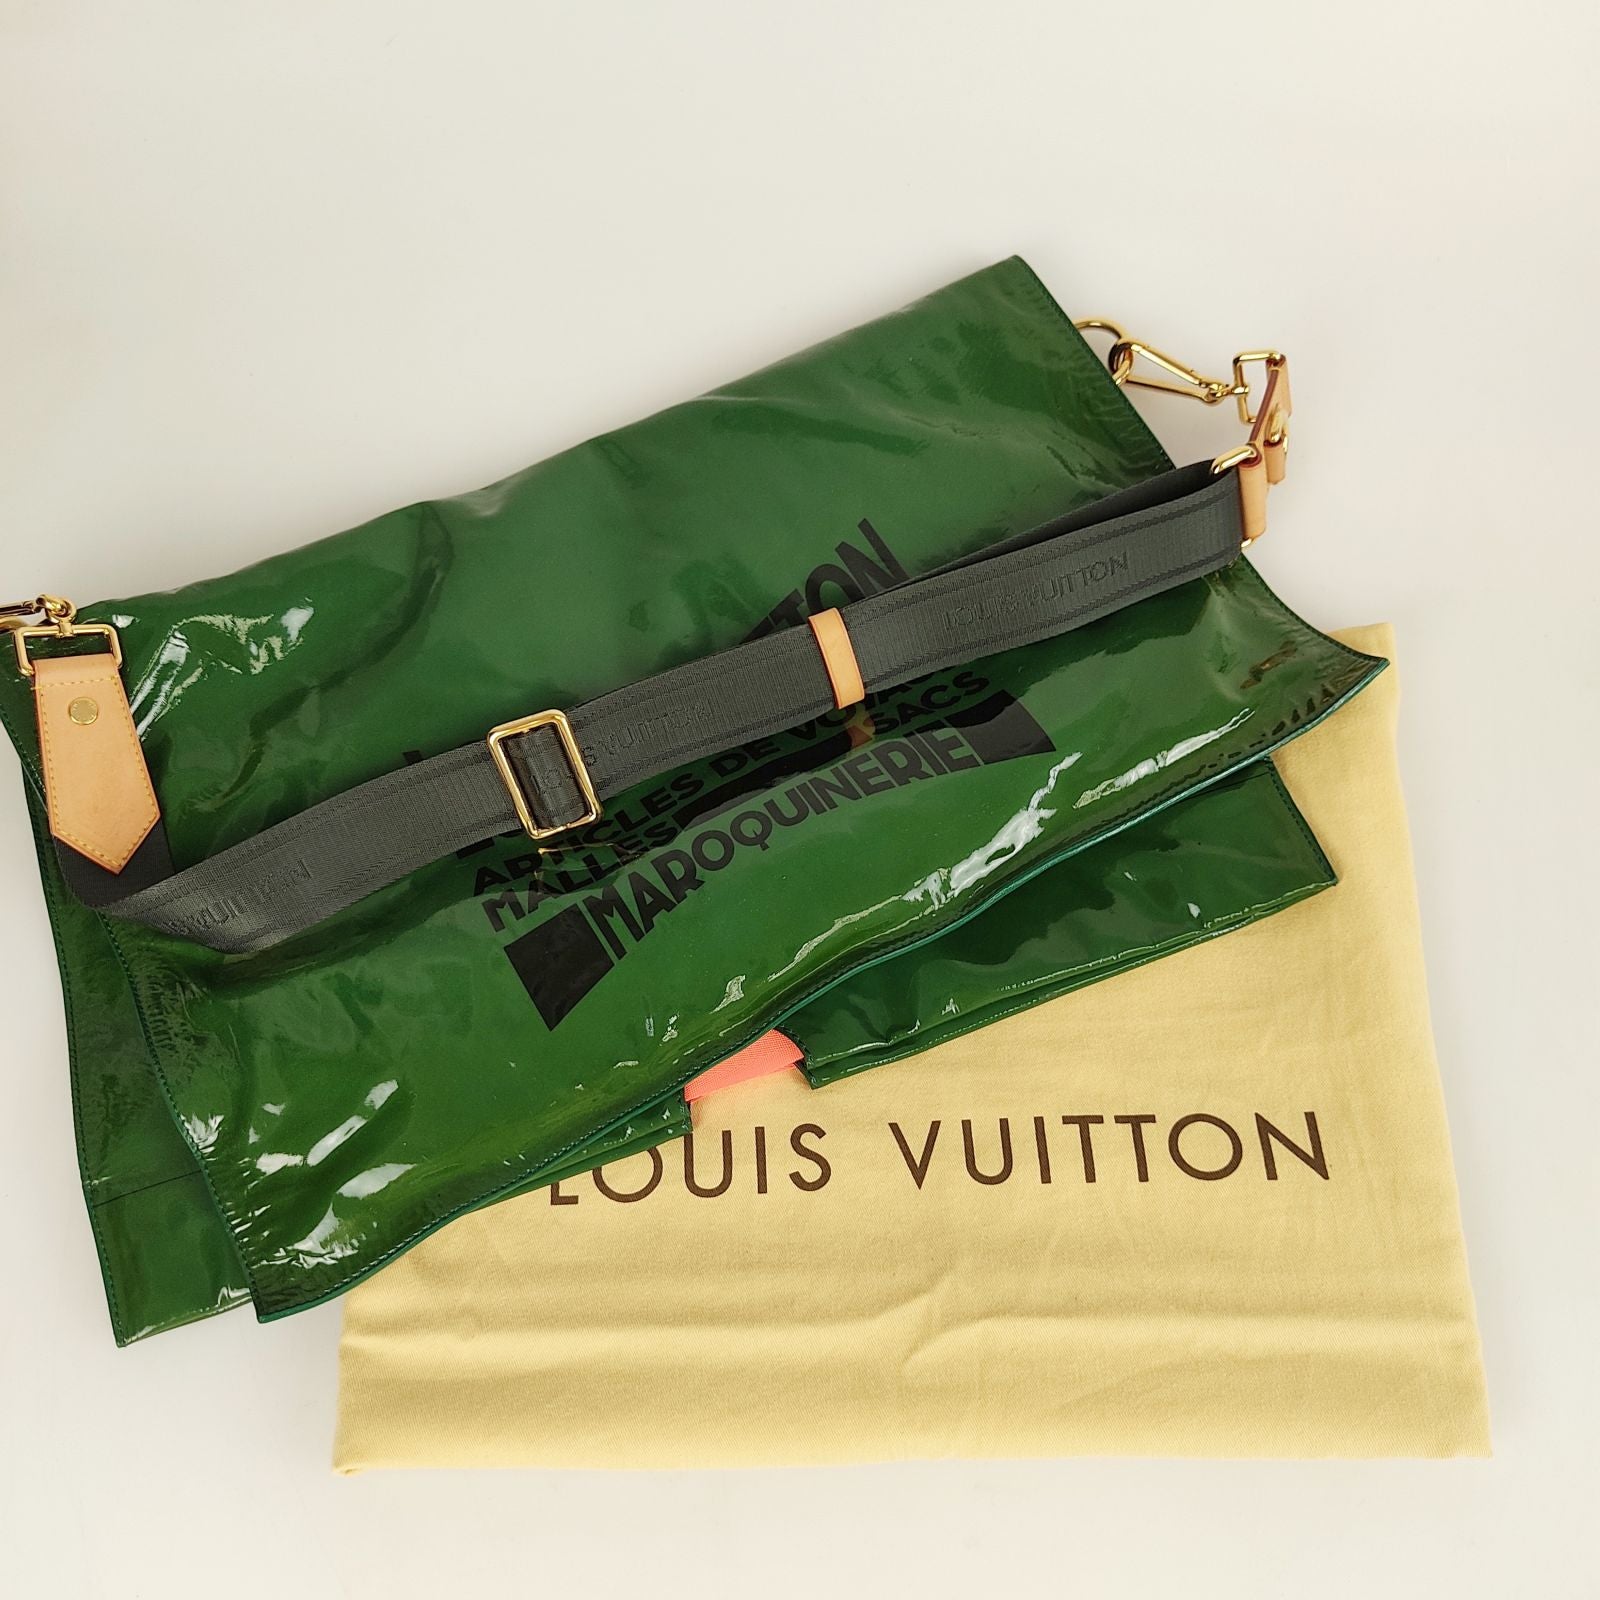 Louis Vuitton travel bag Printemps Eté 2010 Collection Green